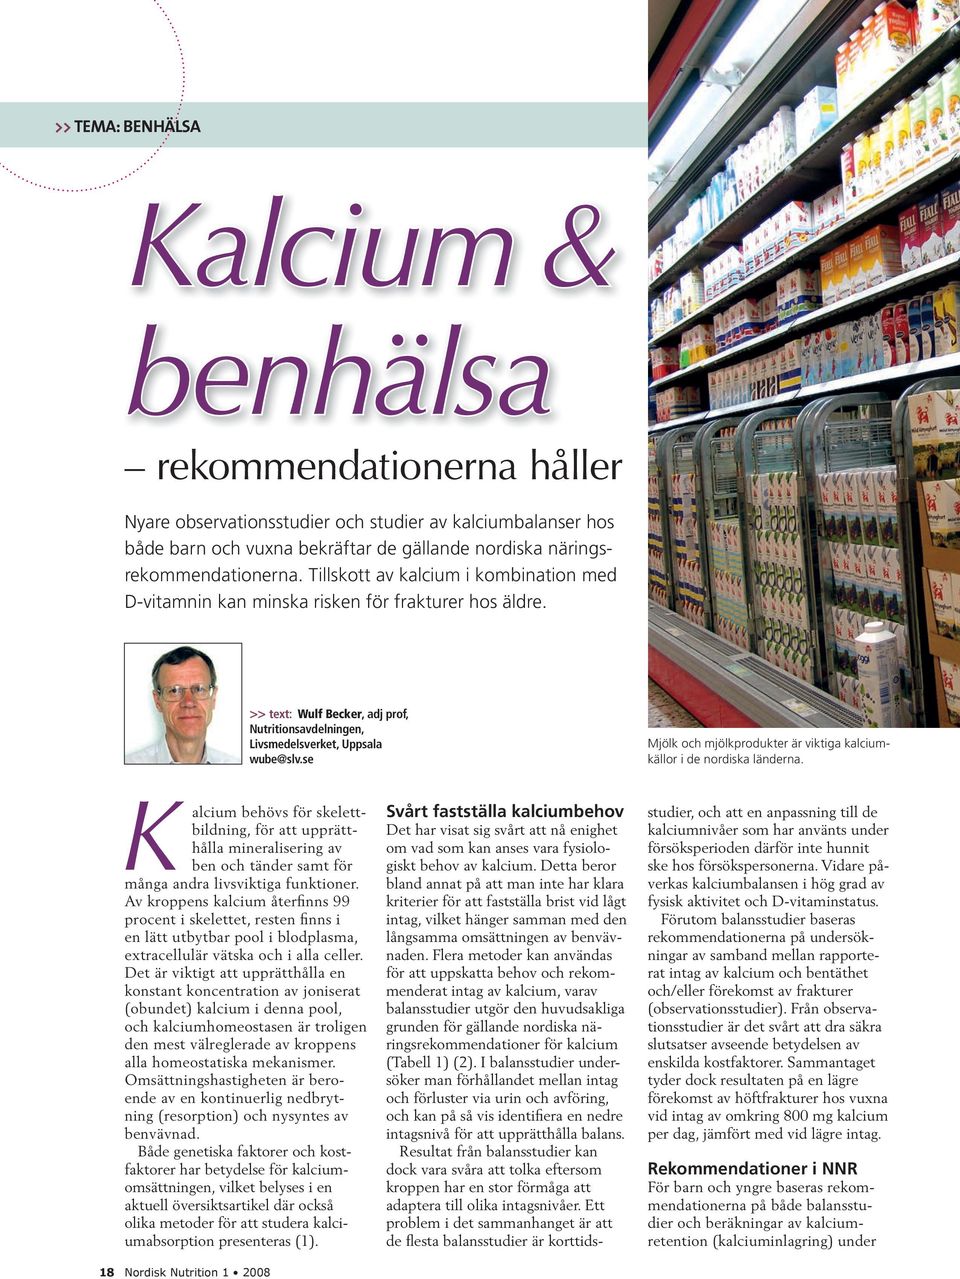 >> text: Wulf Becker, adj prof, Nutritionsavdelningen, Livsmedelsverket, Uppsala wube@slv.se Mjölk och mjölkprodukter är viktiga kalciumkällor i de nordiska länderna.